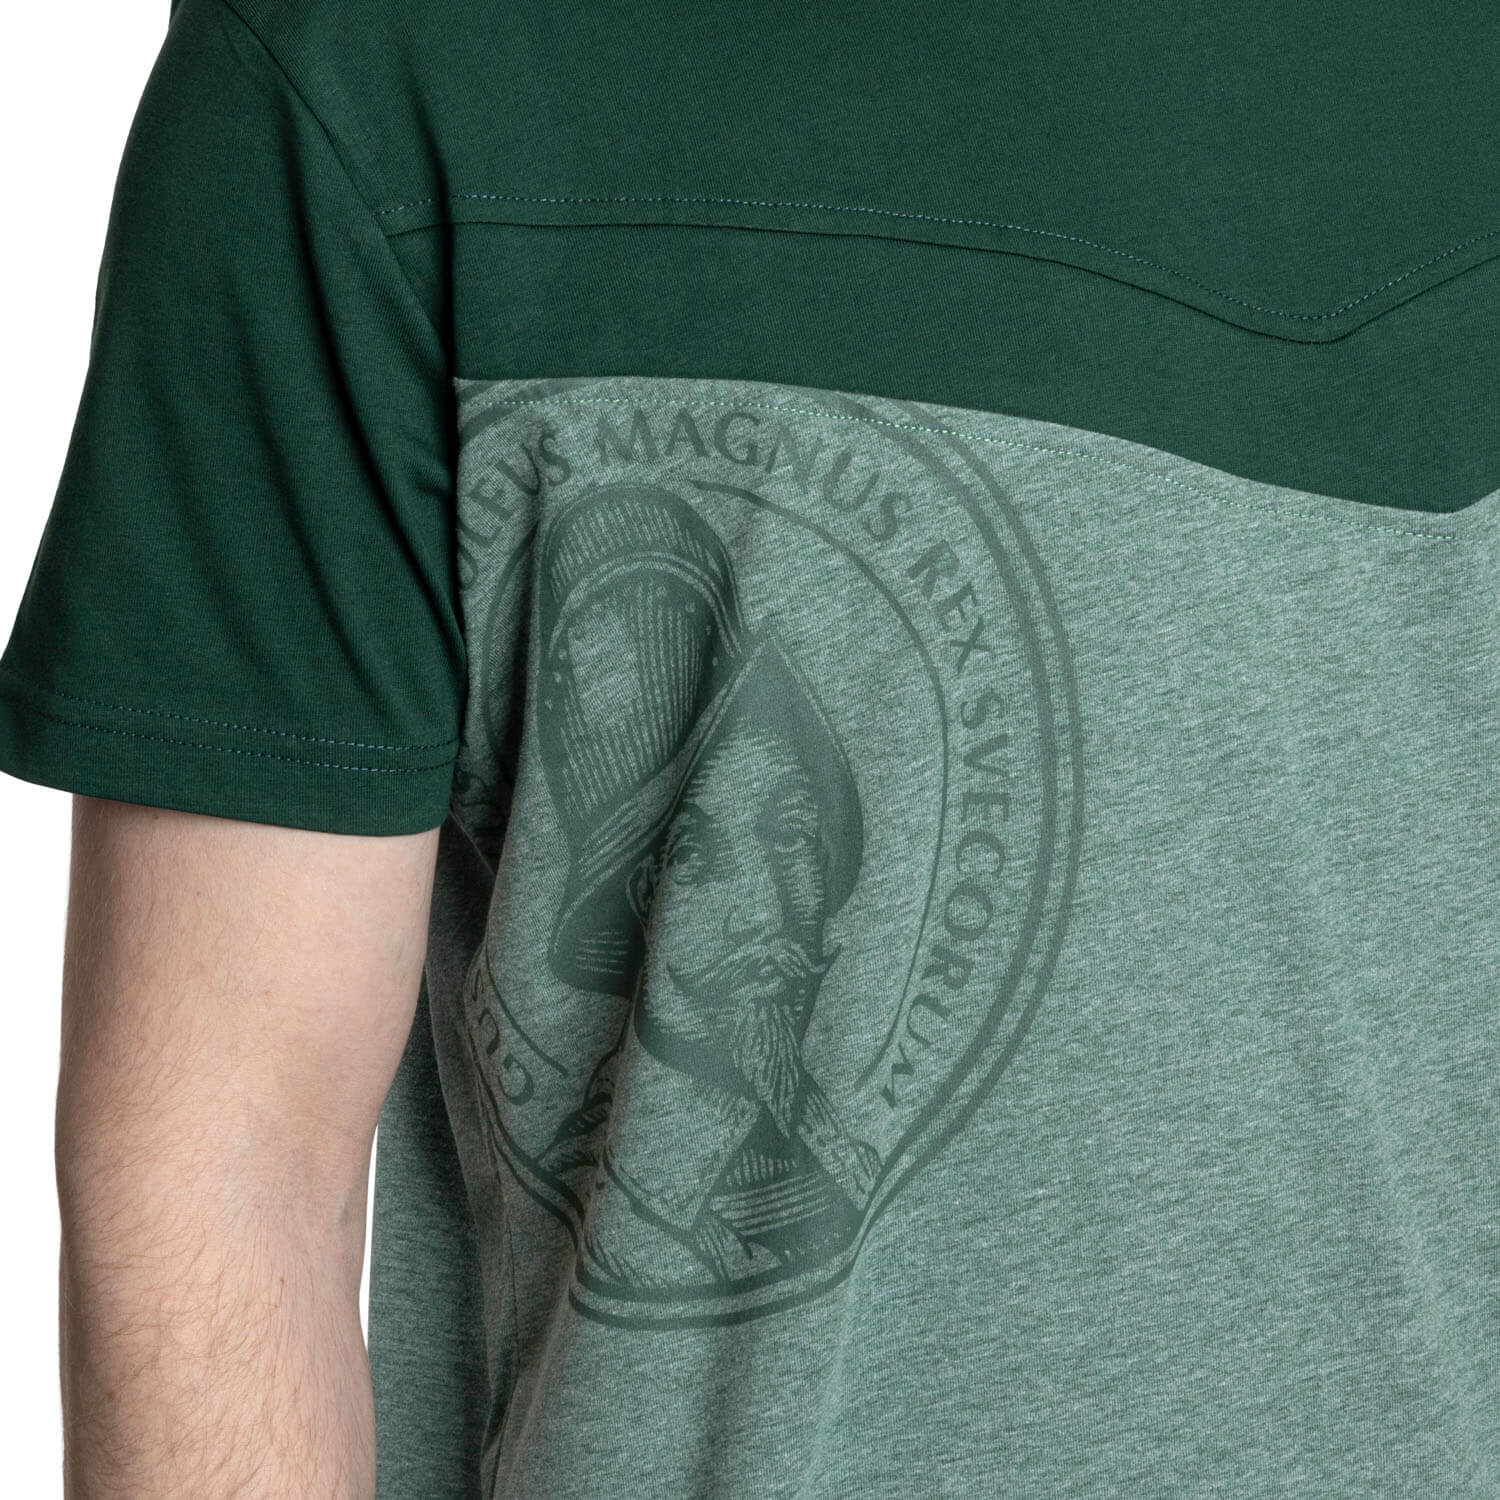 Ur-Krostitzer Green Edition T-Shirt Herren, Gr. S